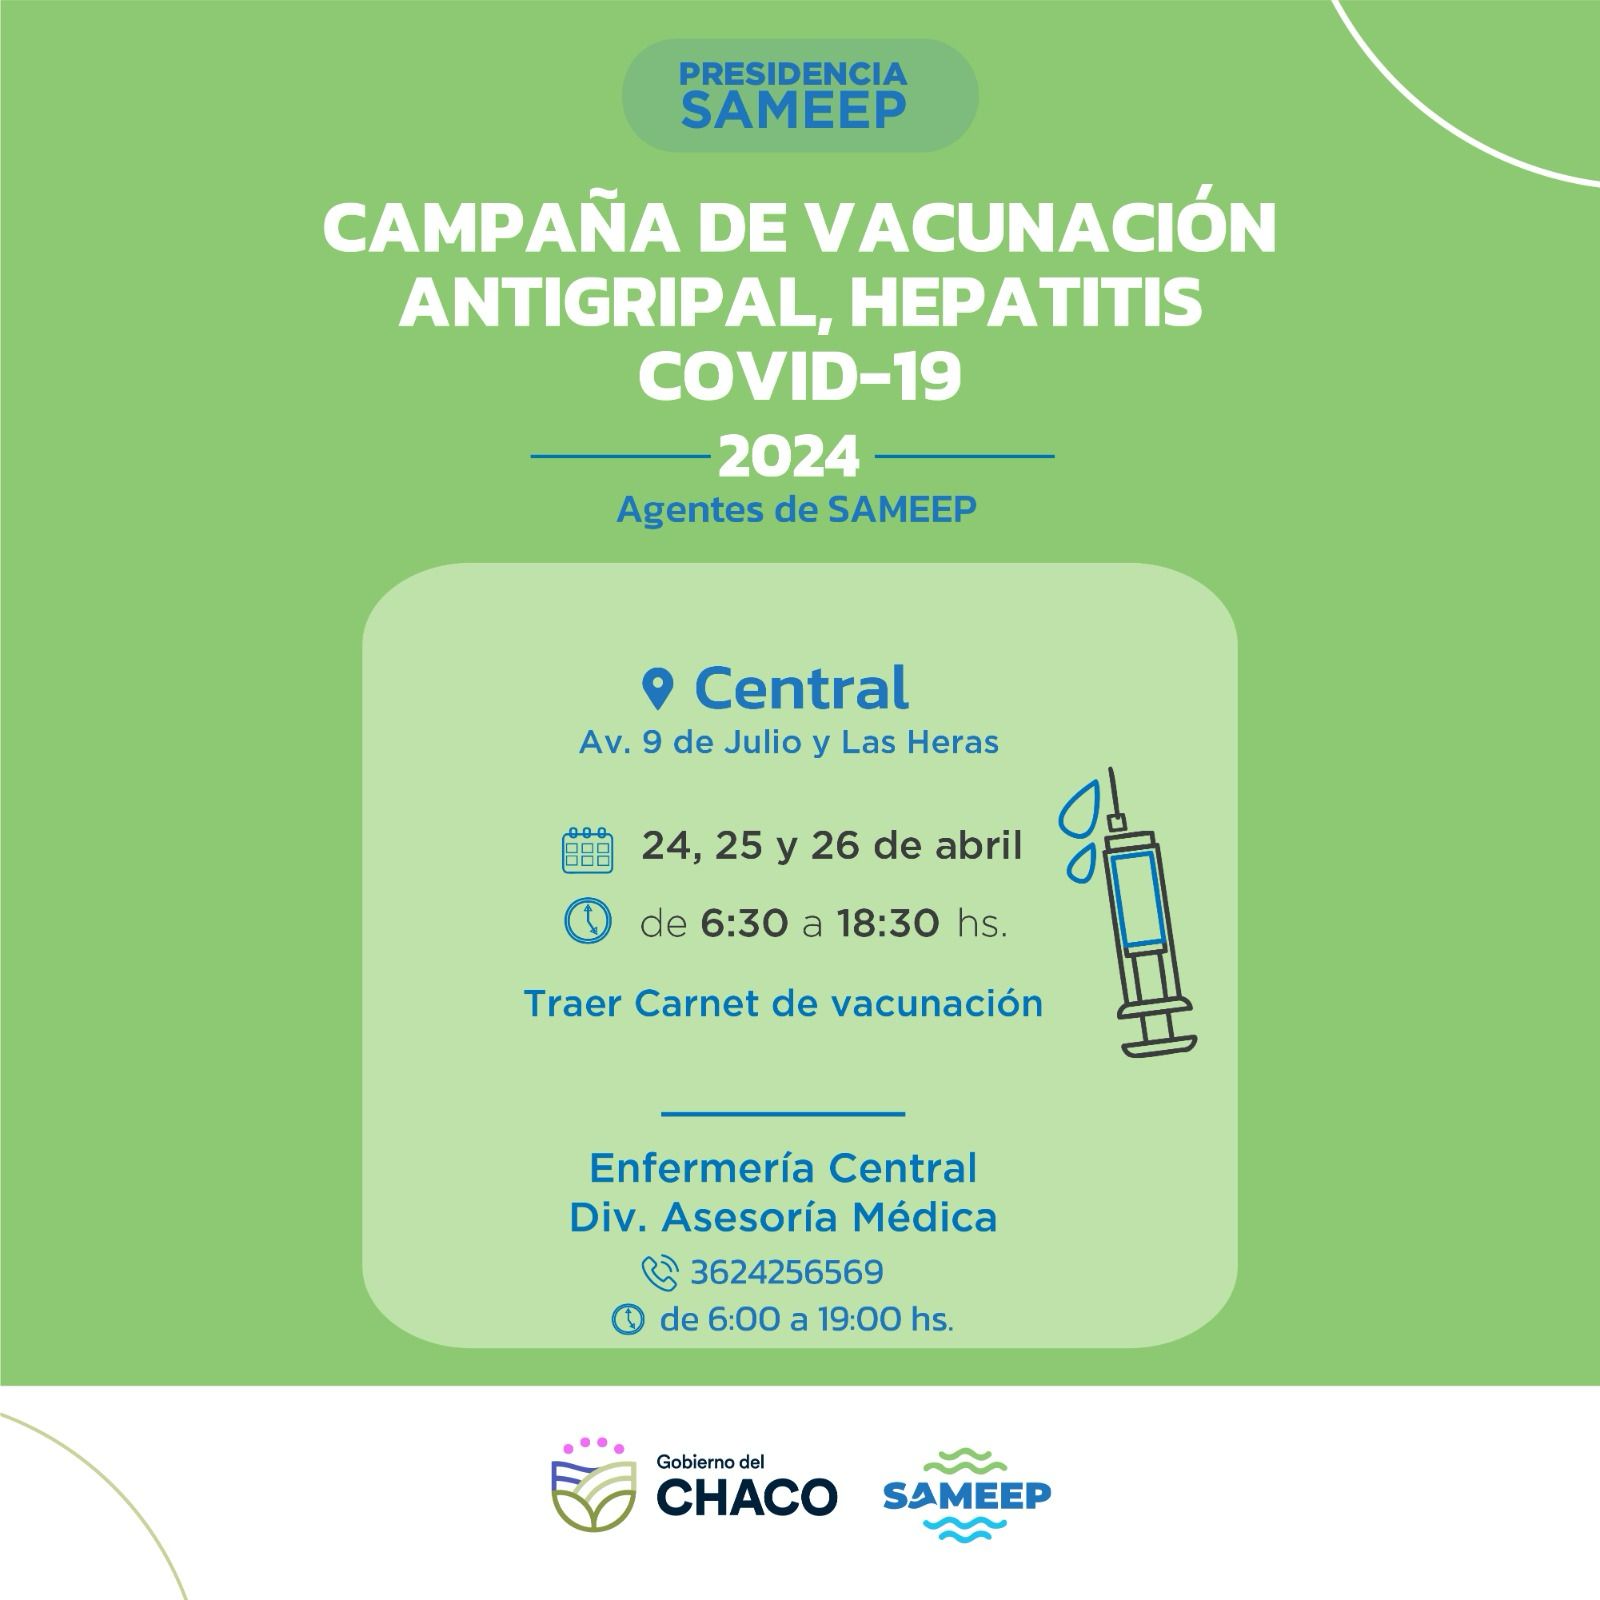 Campaña antigripal 2024: Sameep pone a disposición de sus agentes postas de vacunación 